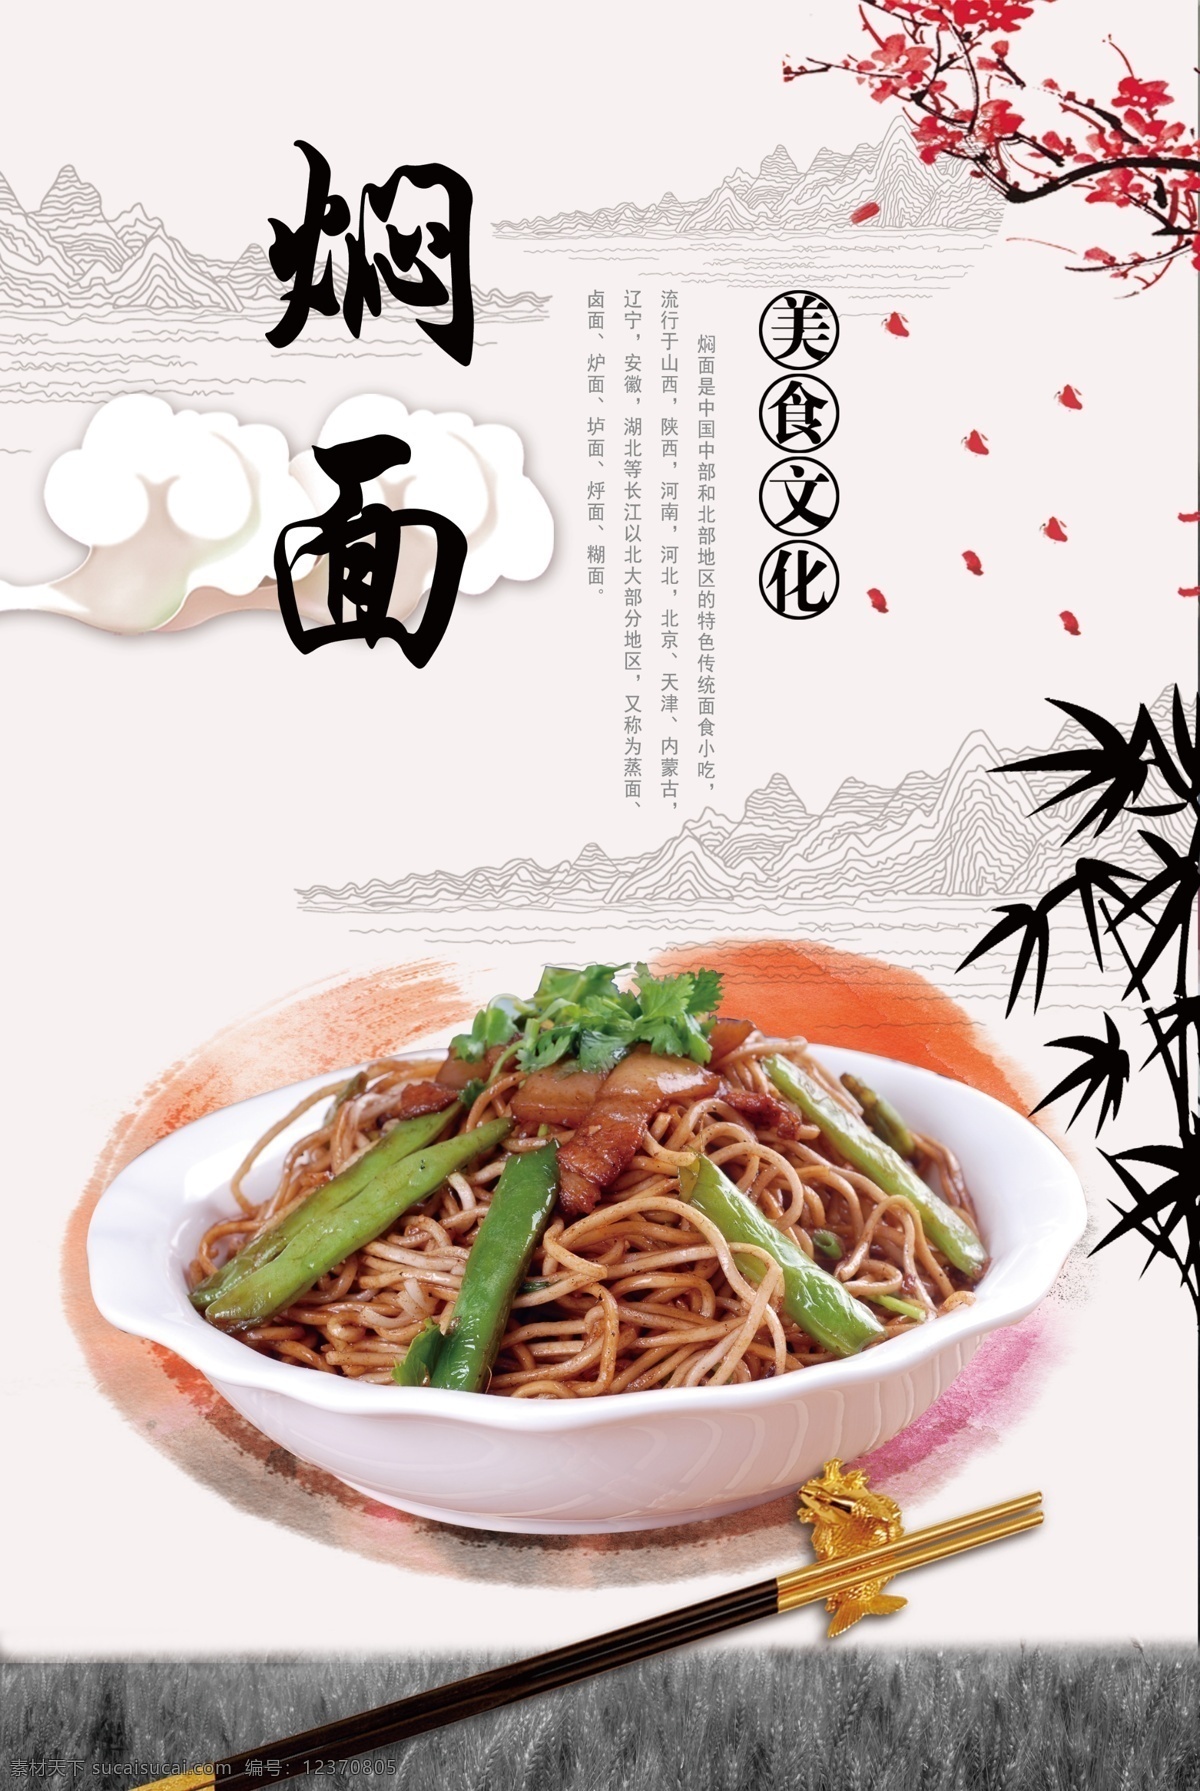 焖面 中国北部 传统 特色面食 美食 面条 豆角 生活百科 餐饮美食